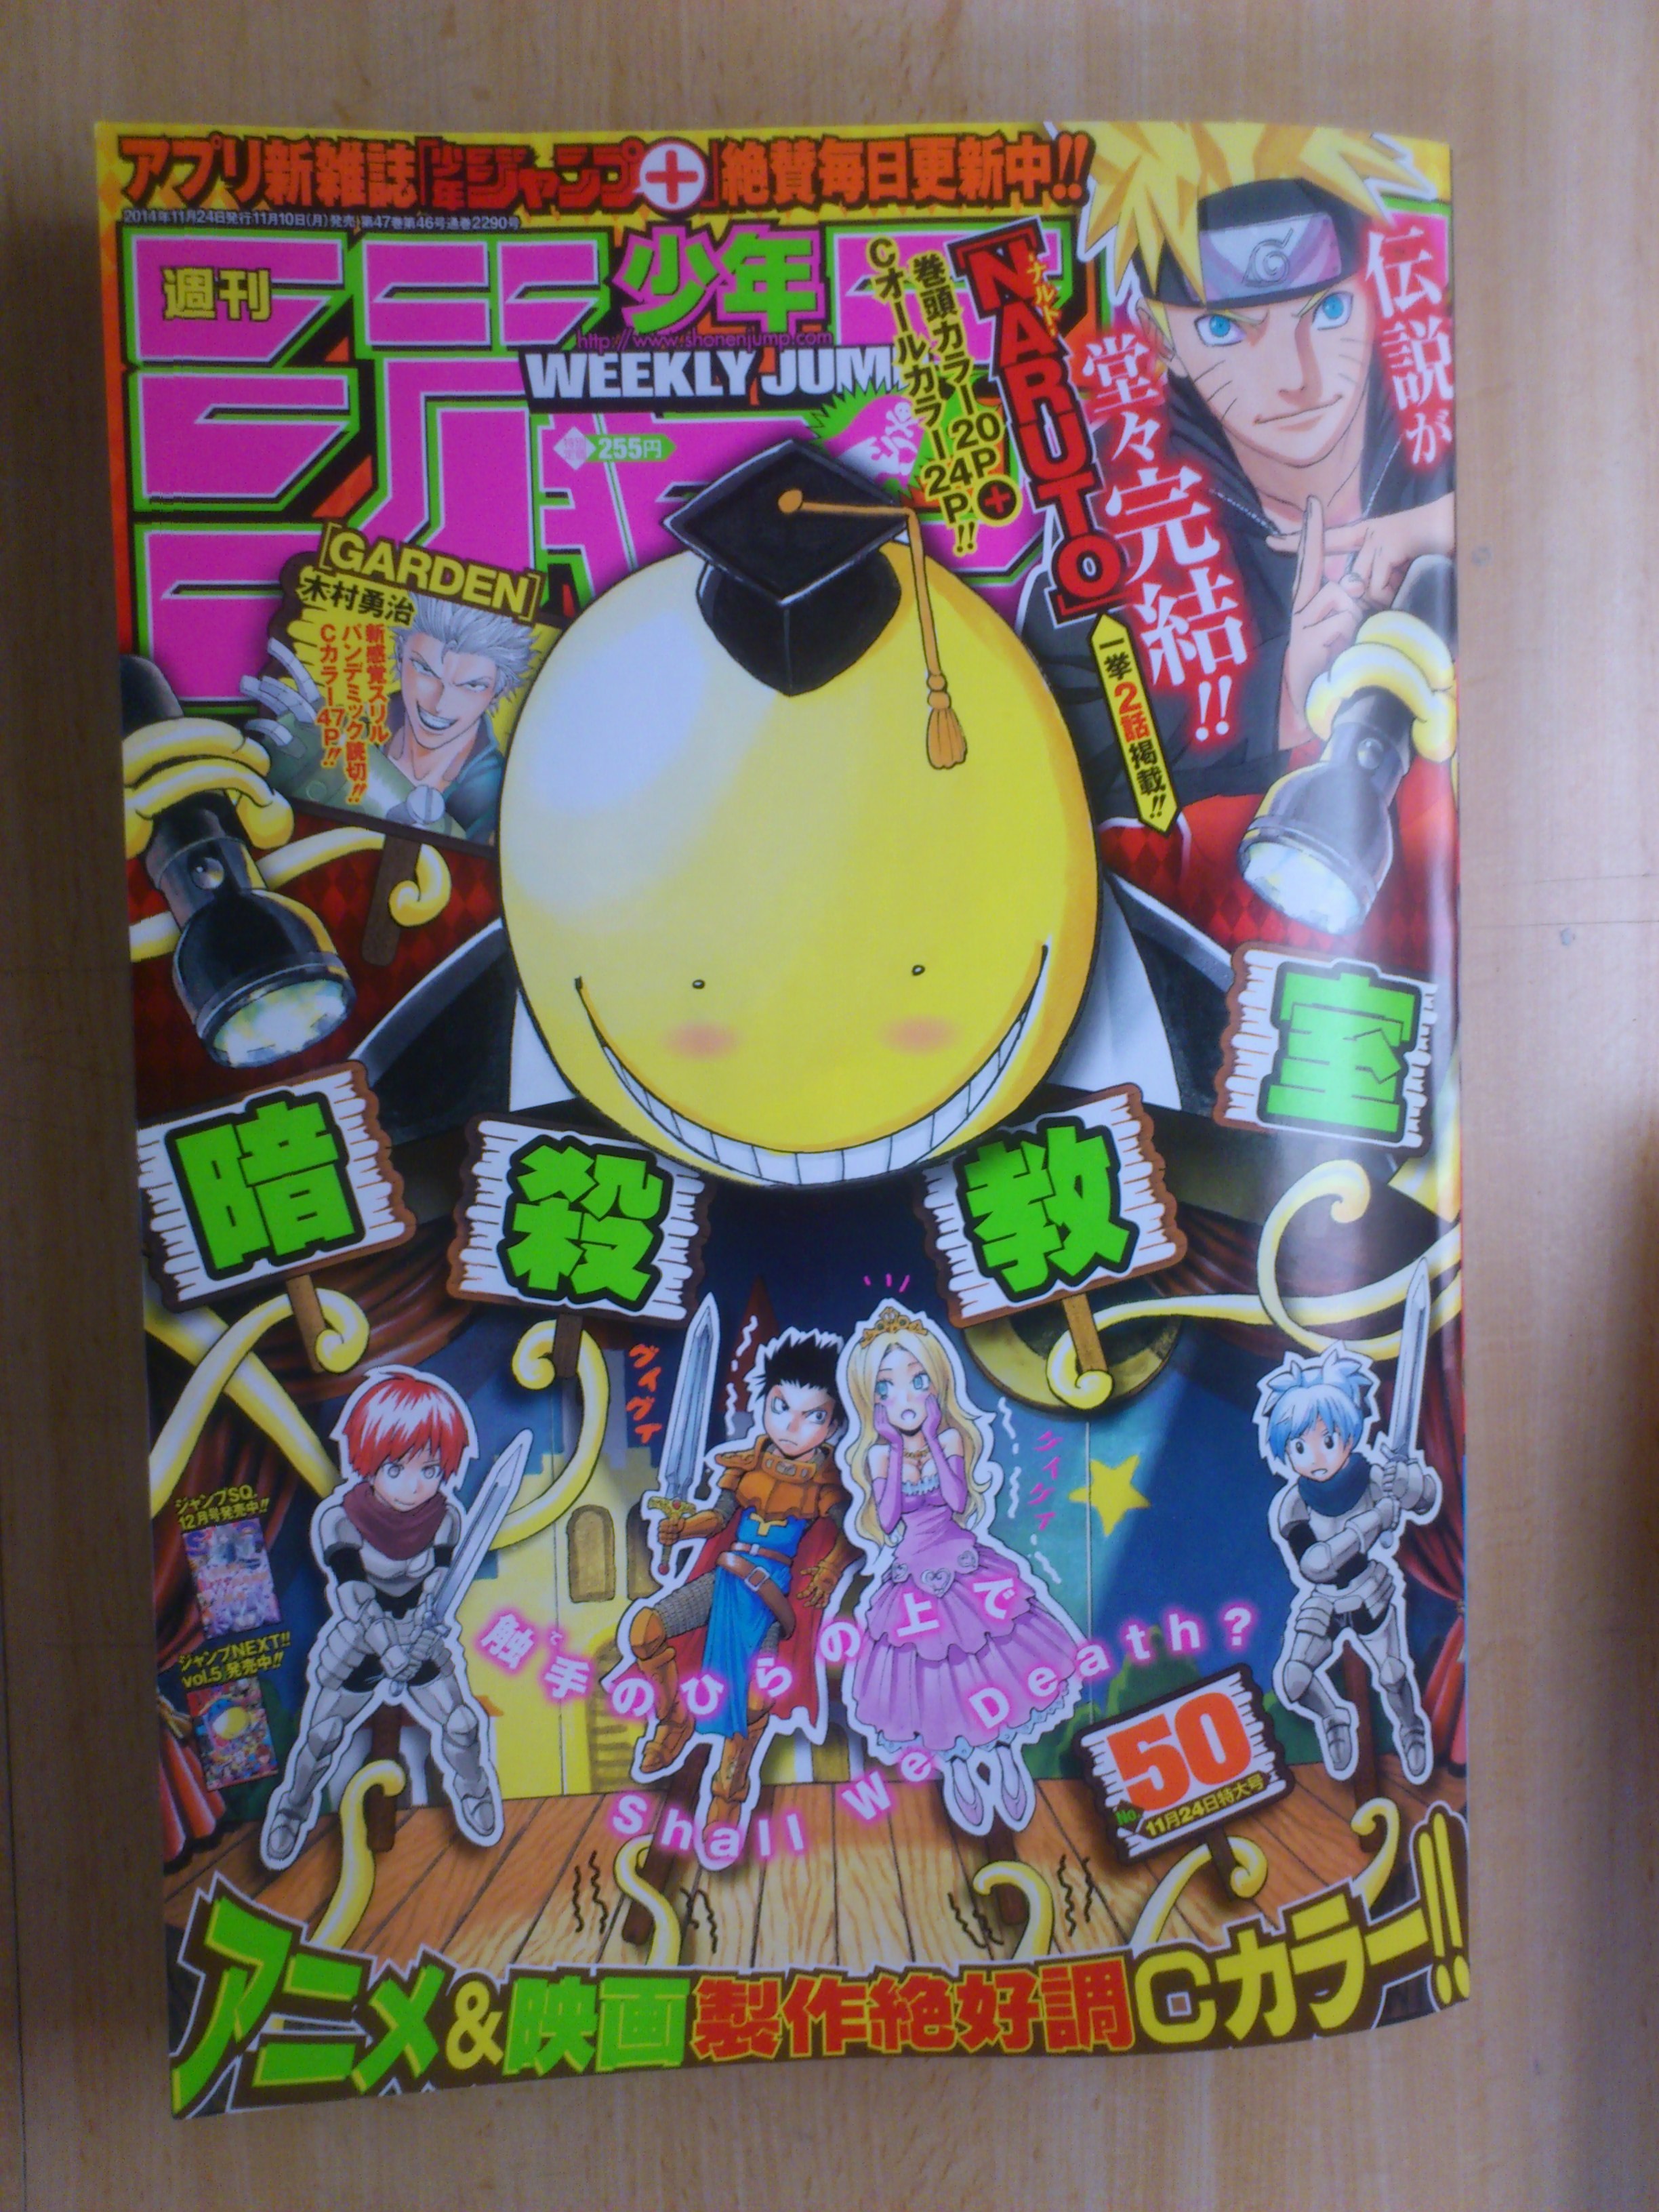 週刊少年ジャンプ50号感想 14年11月10日発売号 ナルト最終回 週刊少年ジャンプ感想